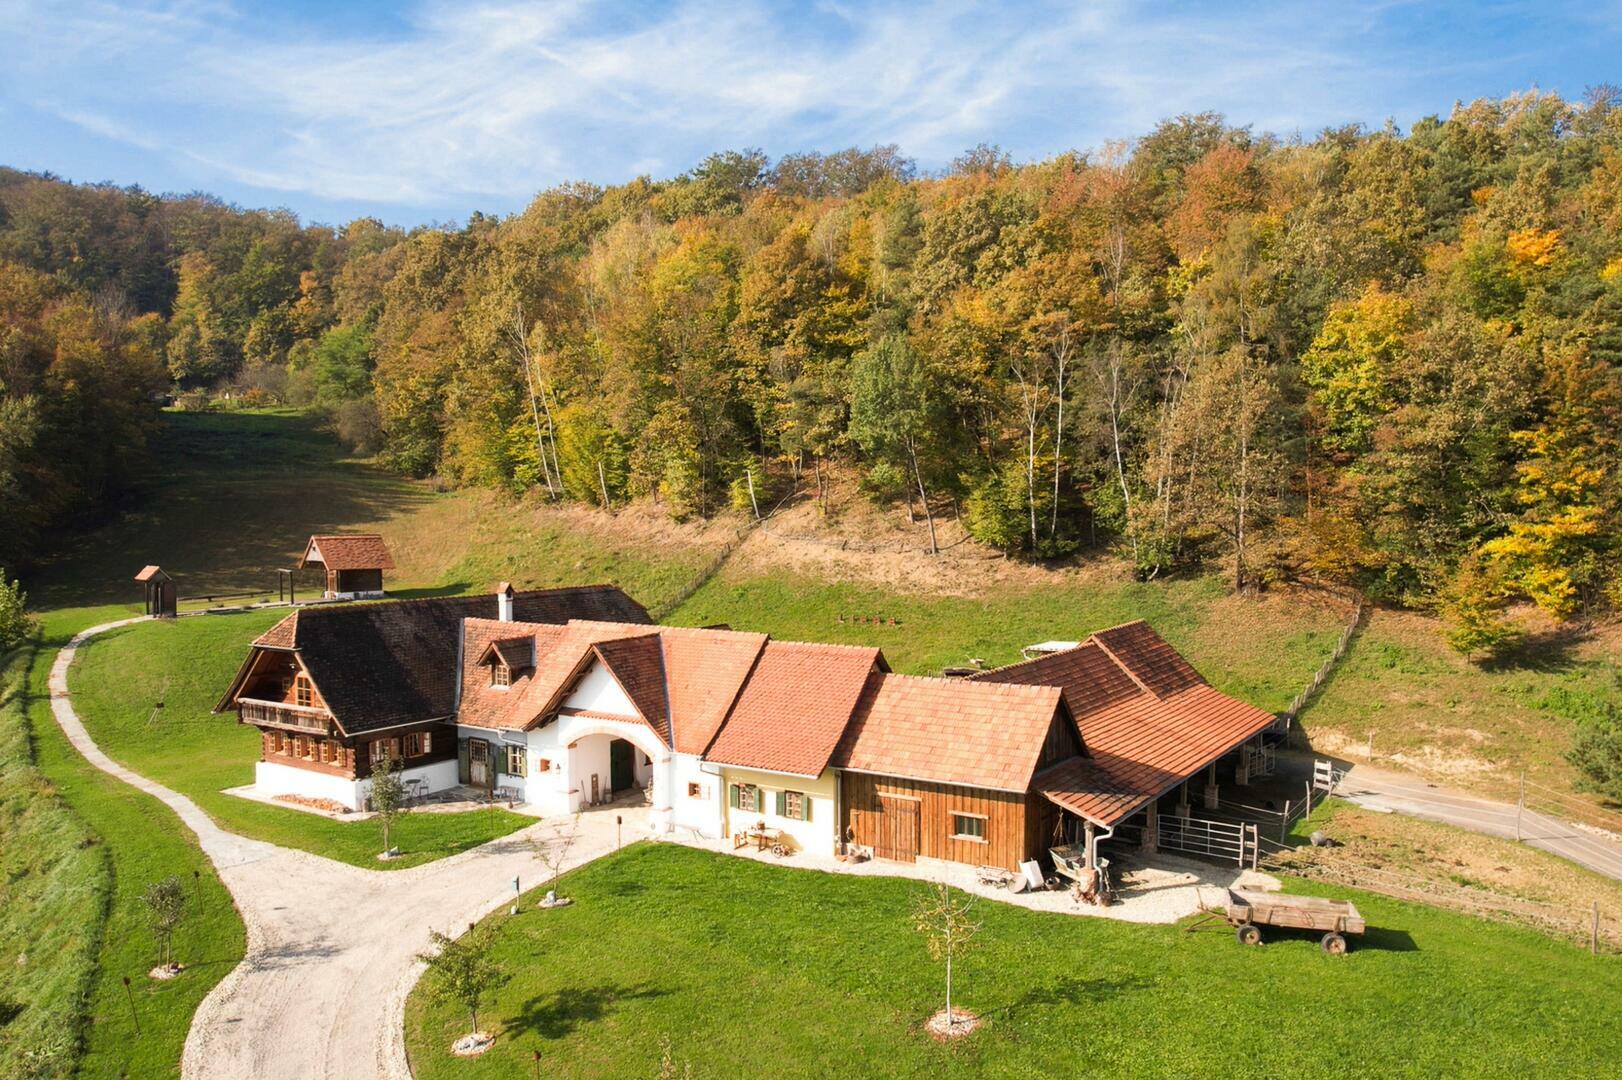 Land- und Forstwirtschaft zu kaufen: Ober-Henndorf, 8020 Graz - Landhaus in Thermenregion (4)